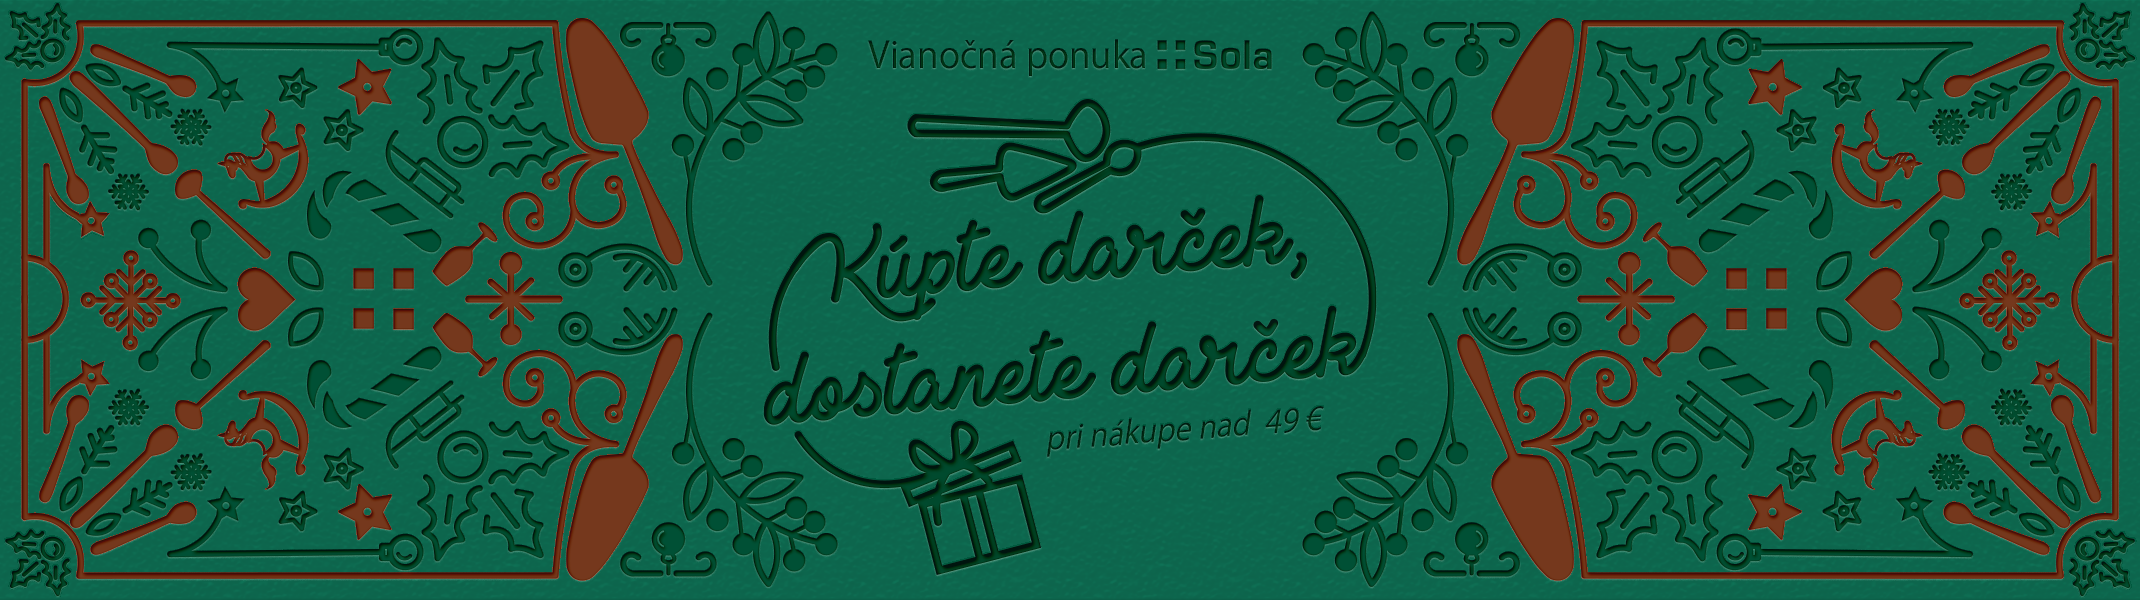 Vianočná kampaň 2022 / Homepage banner